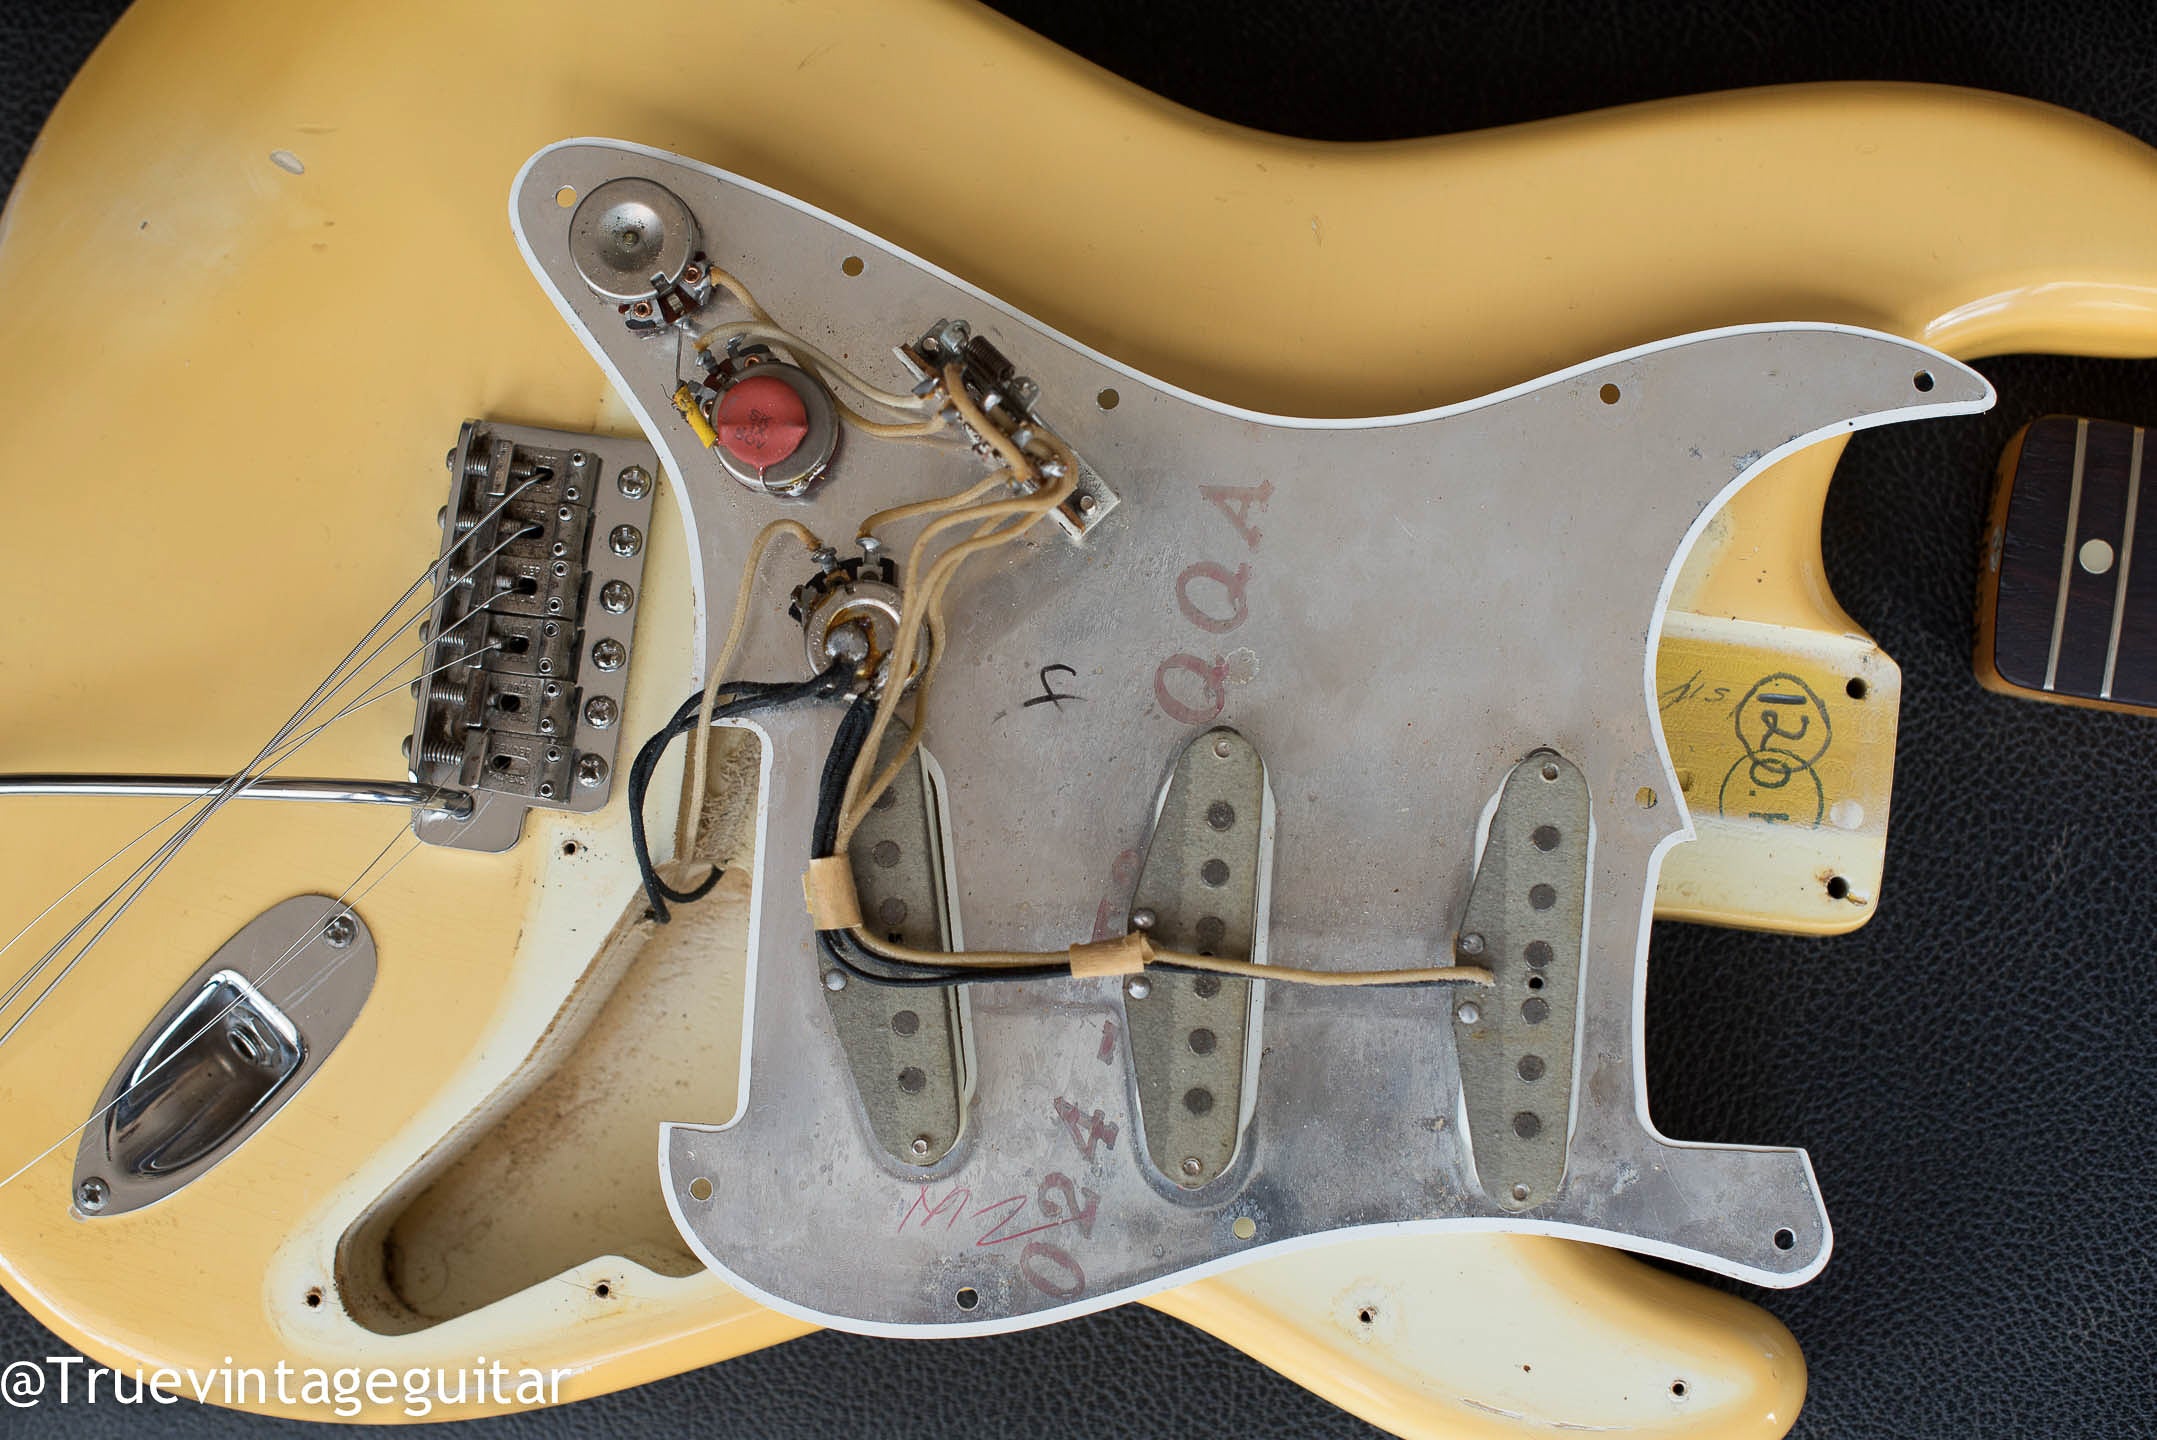 Original pickups, potentiometers, electronics, grey bobbin pickups, vintage 1965 Fender Stratocaster